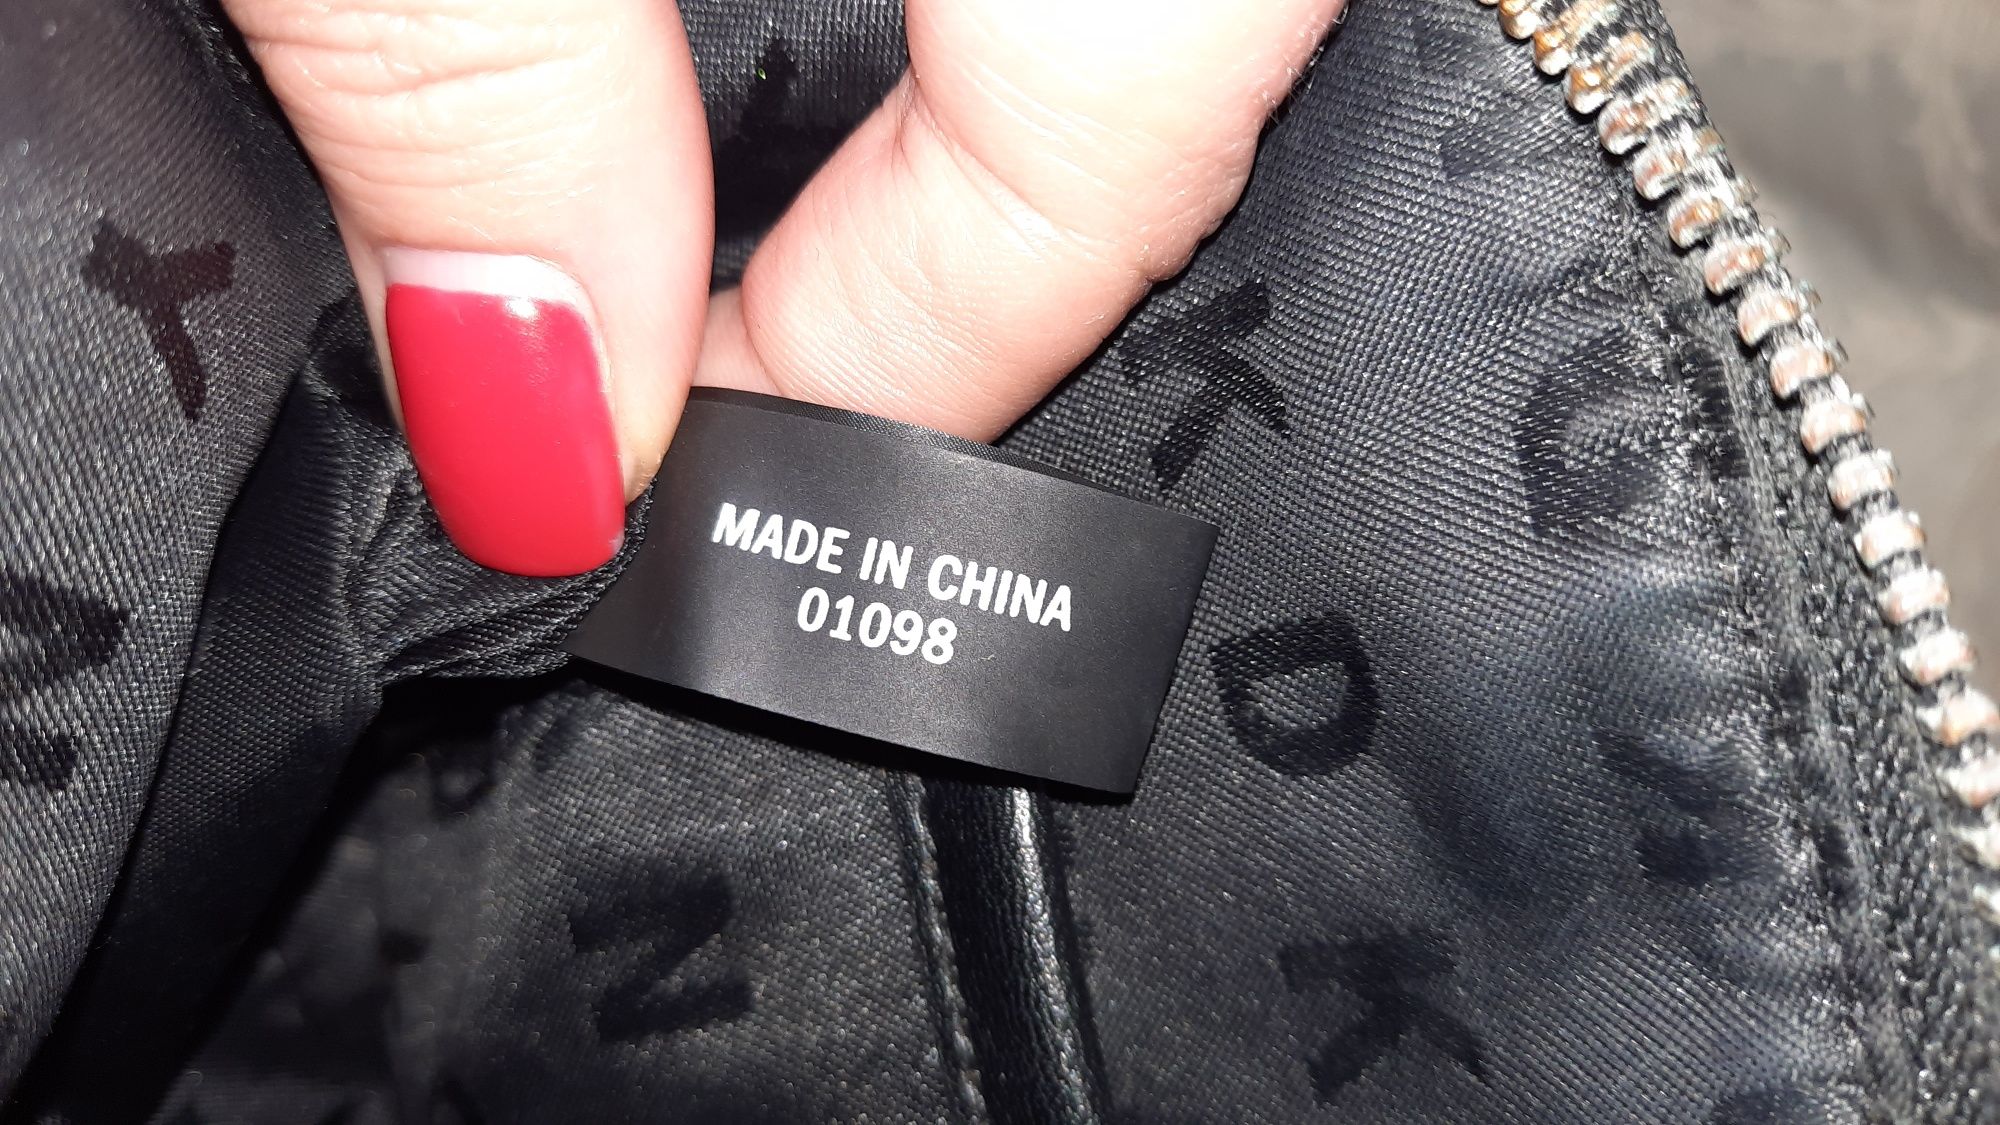 Фирменная сумка, кроссбоди DKNY Оригинал